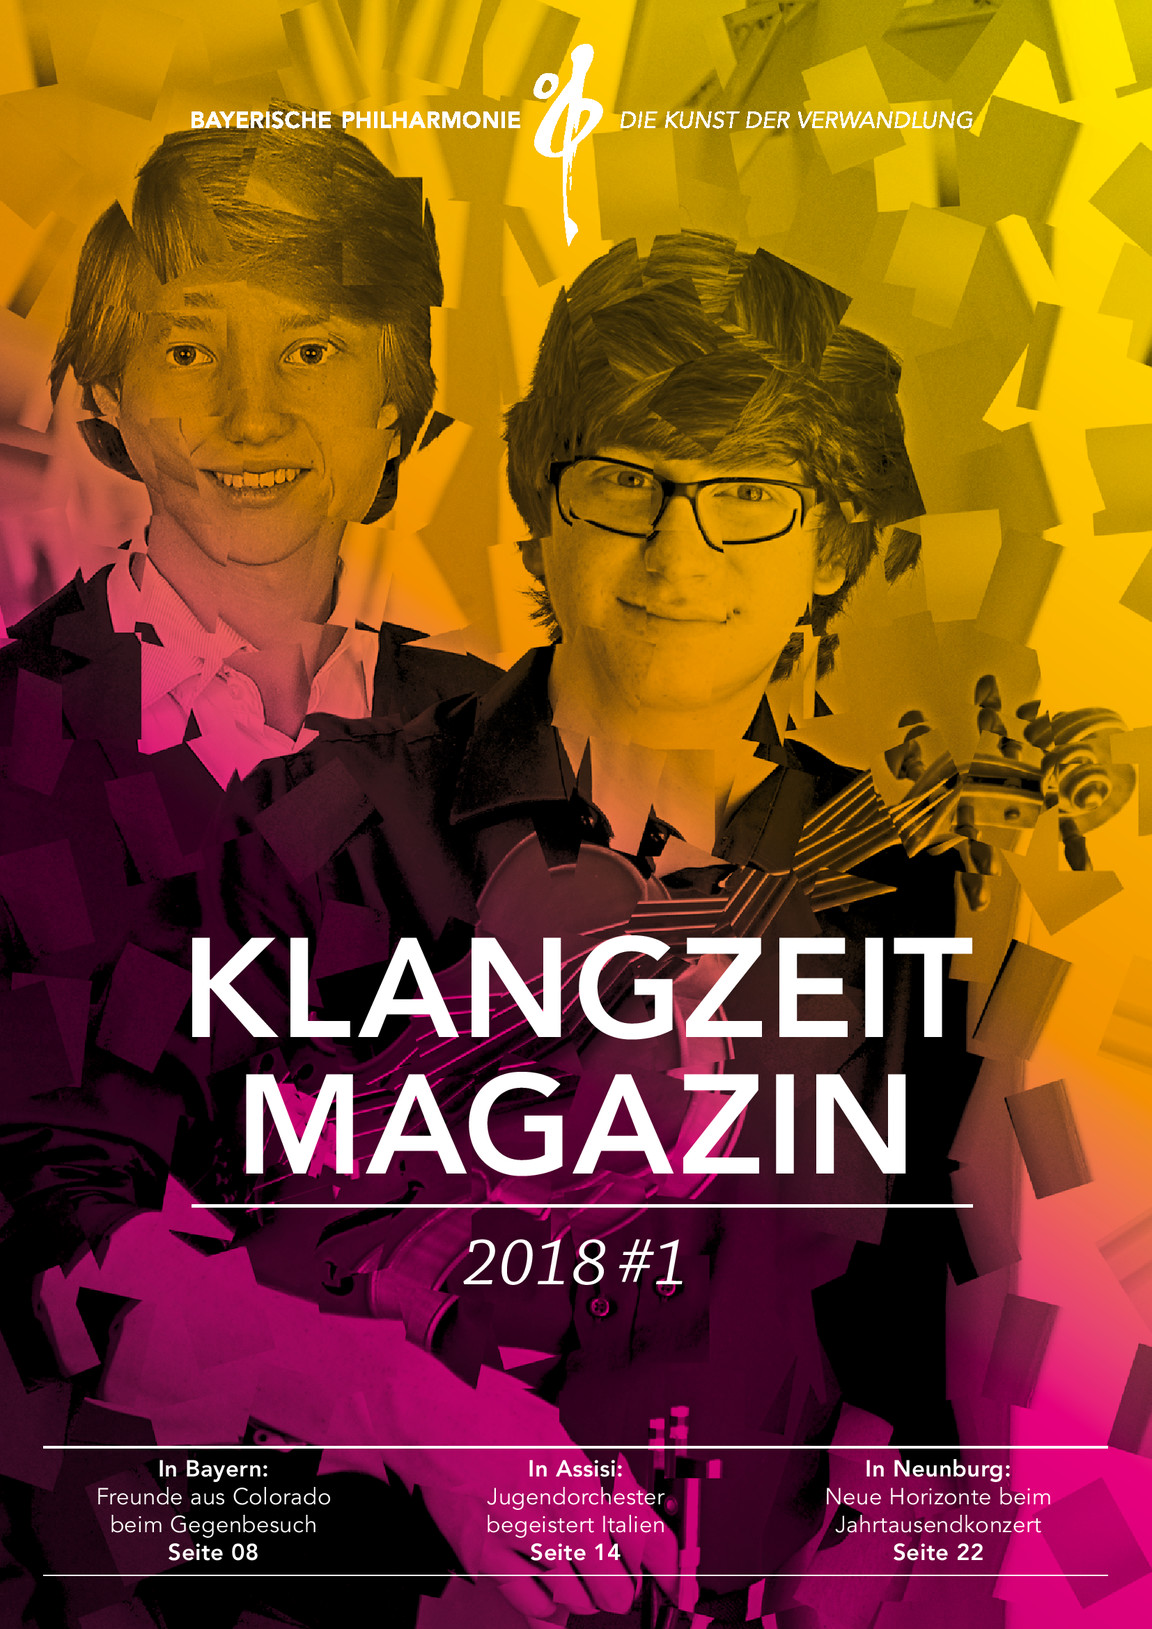 Das soeben erschienene Klangzeit-Magazin 2017/18 der Bayerischen Philharmonie widmet dem Neunburger Jubiläums-Kulturprojekt "Jahrtausendkonzert" eine illustrierte Doppelseite.